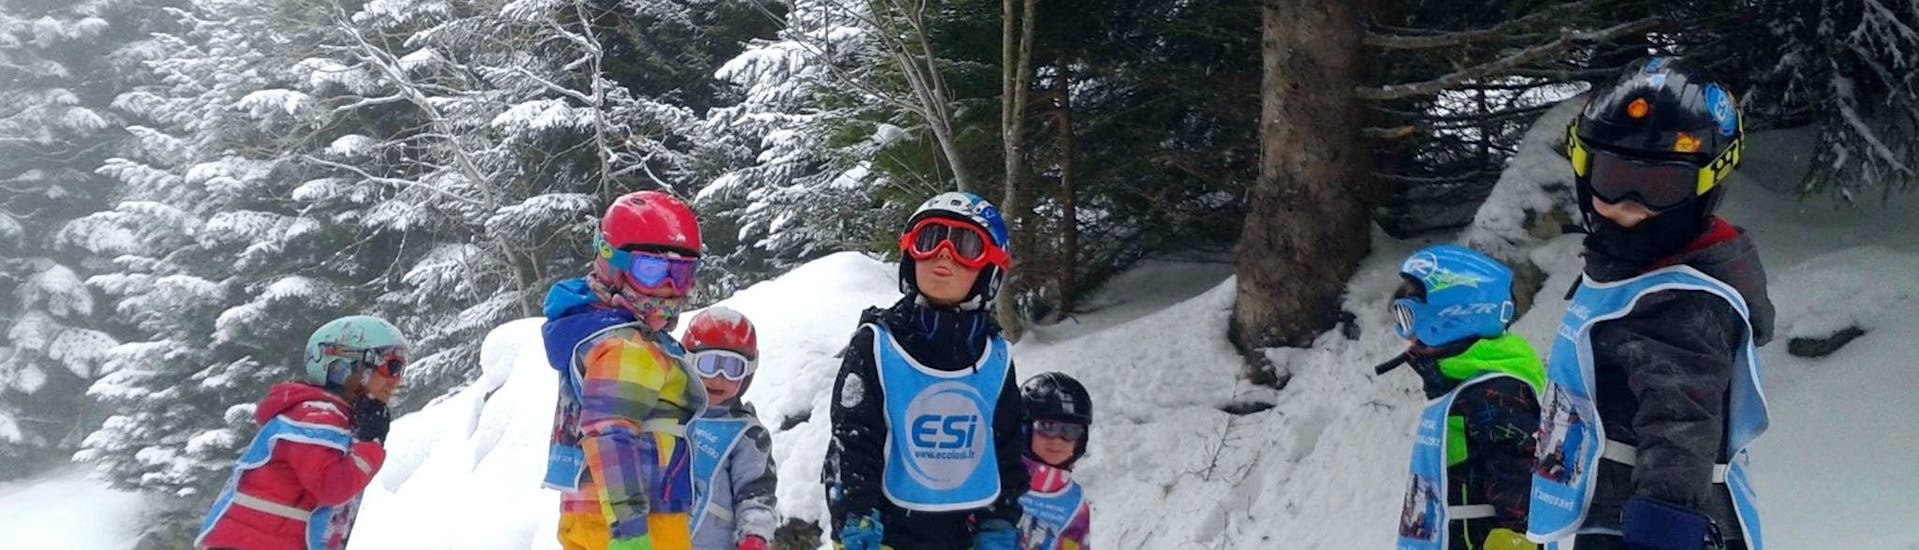 Kinder-Skikurs ab 3 Jahren für alle Levels.